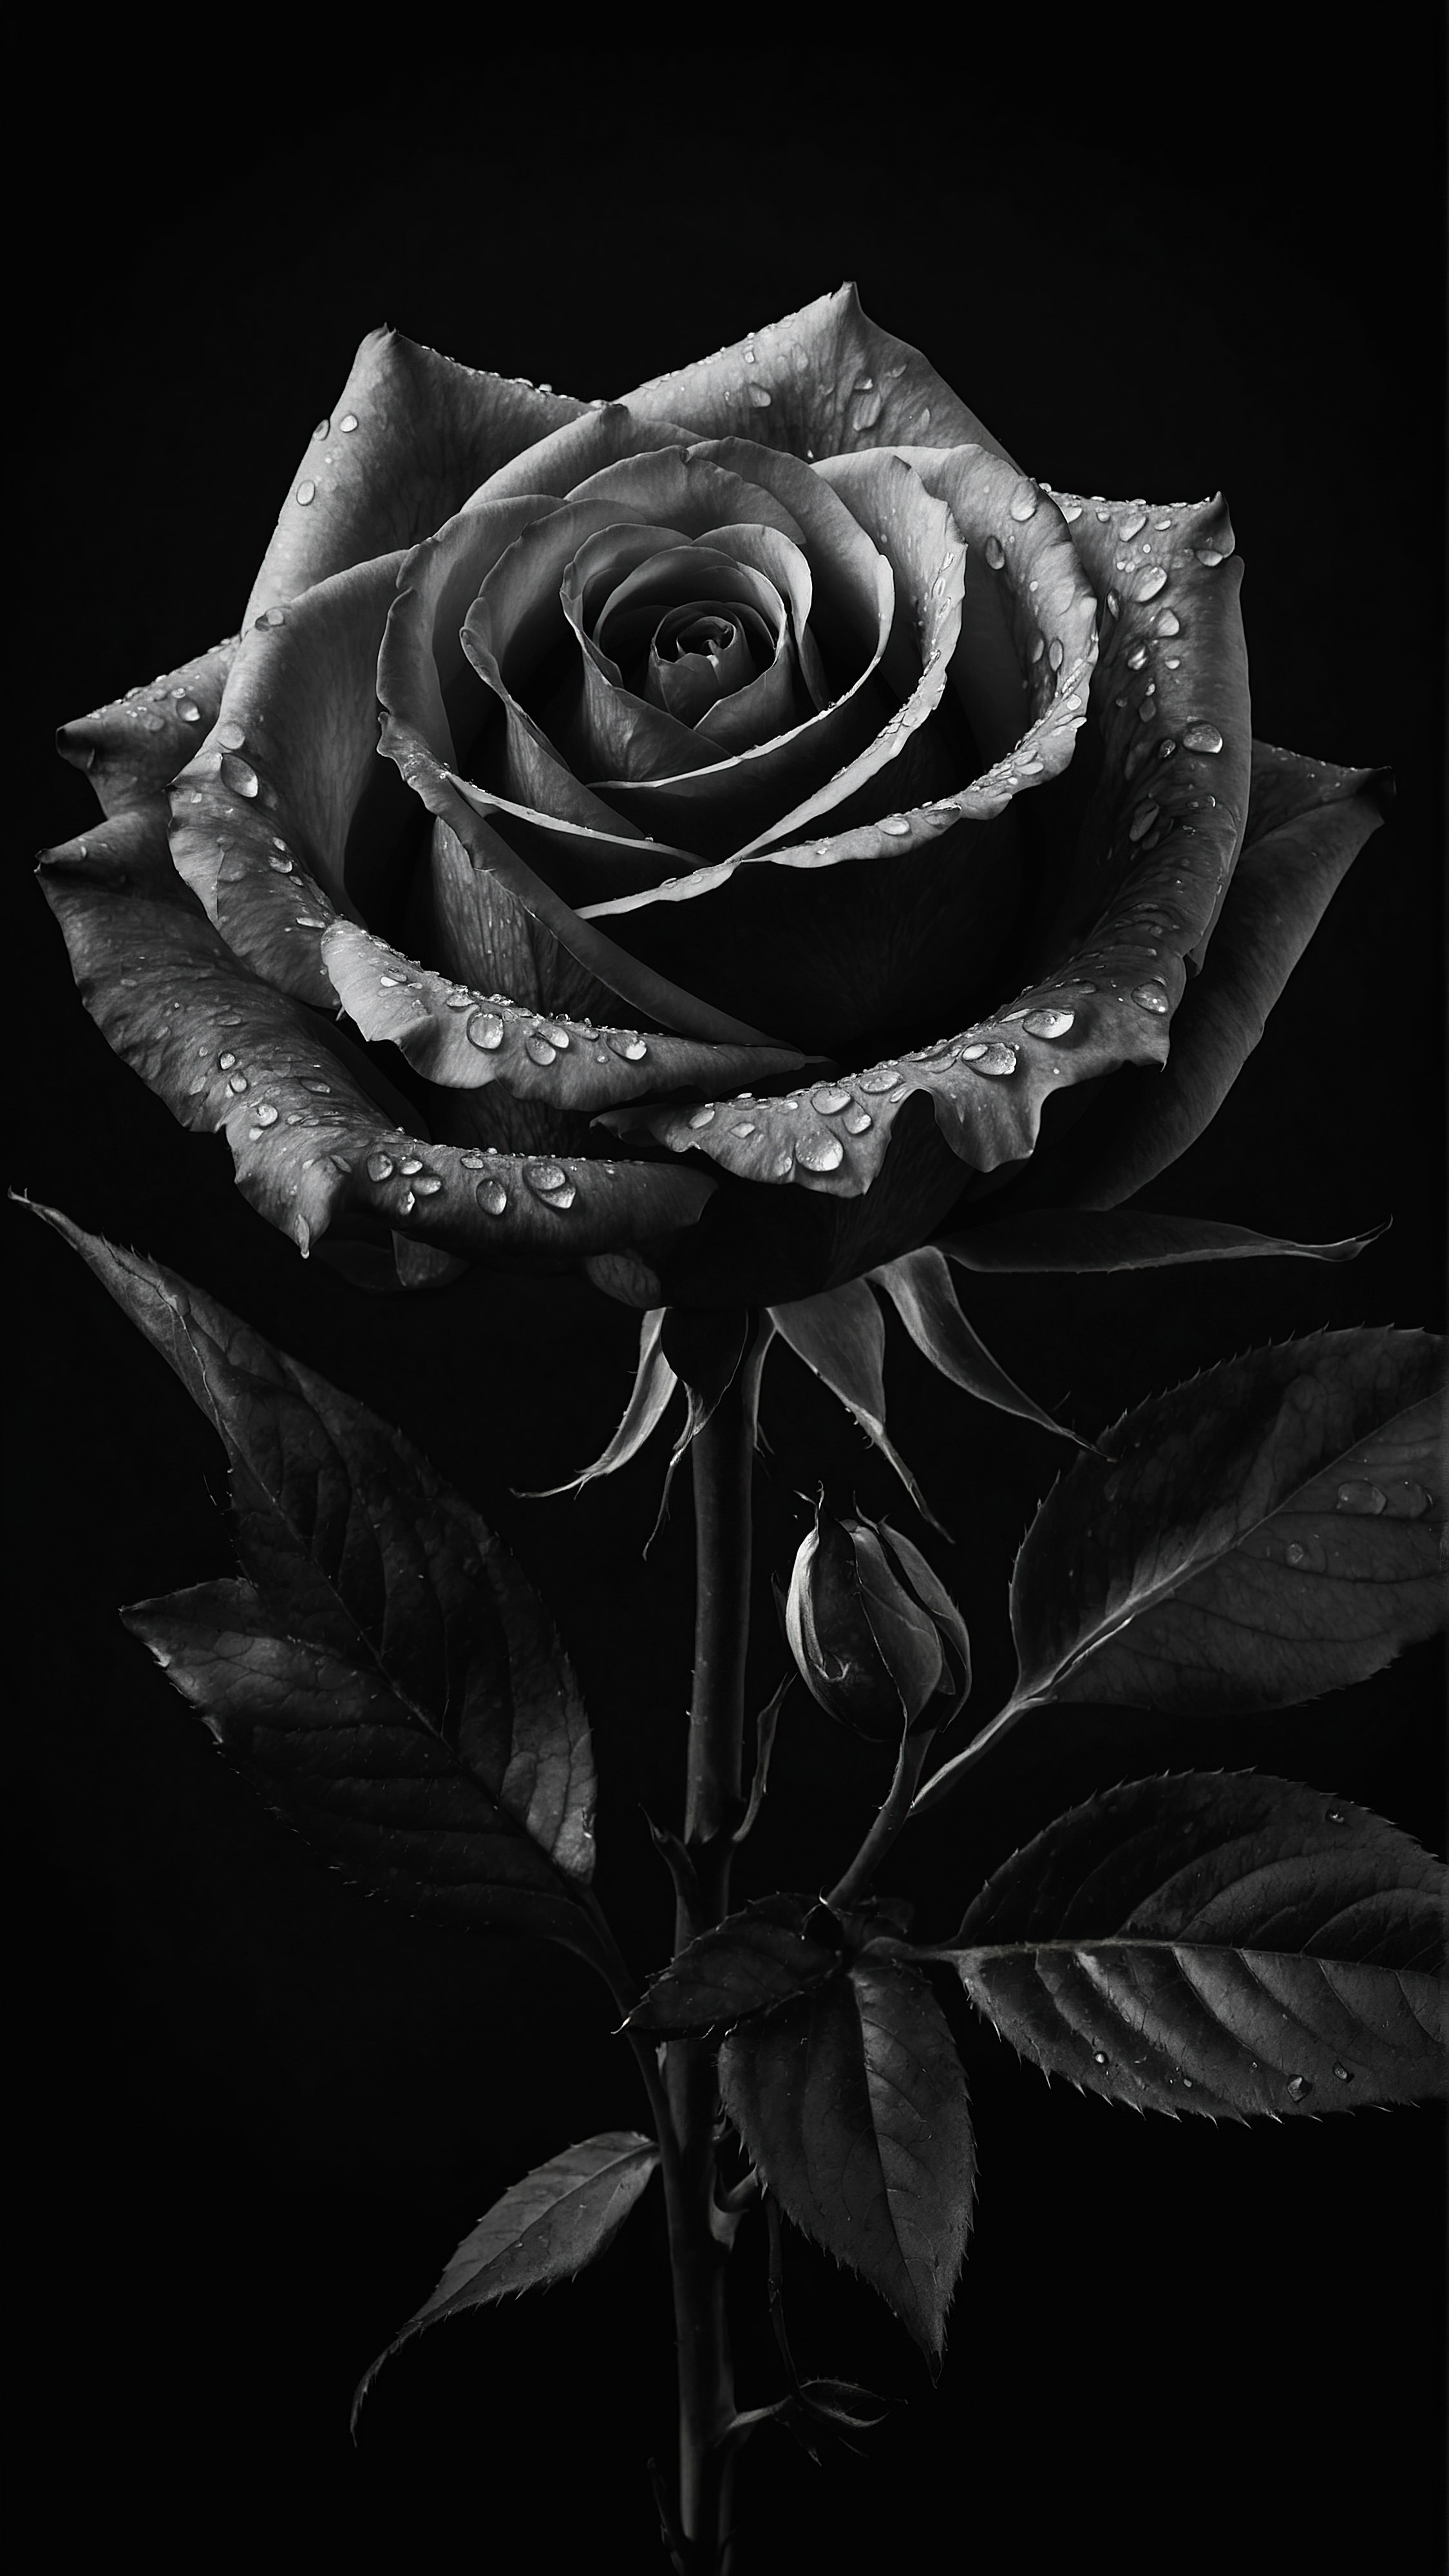 Appréciez l'élégance d'une rose aux détails complexes, mise en valeur sur un fond sombre, à travers notre fond d'écran esthétique noir pour iPhone.